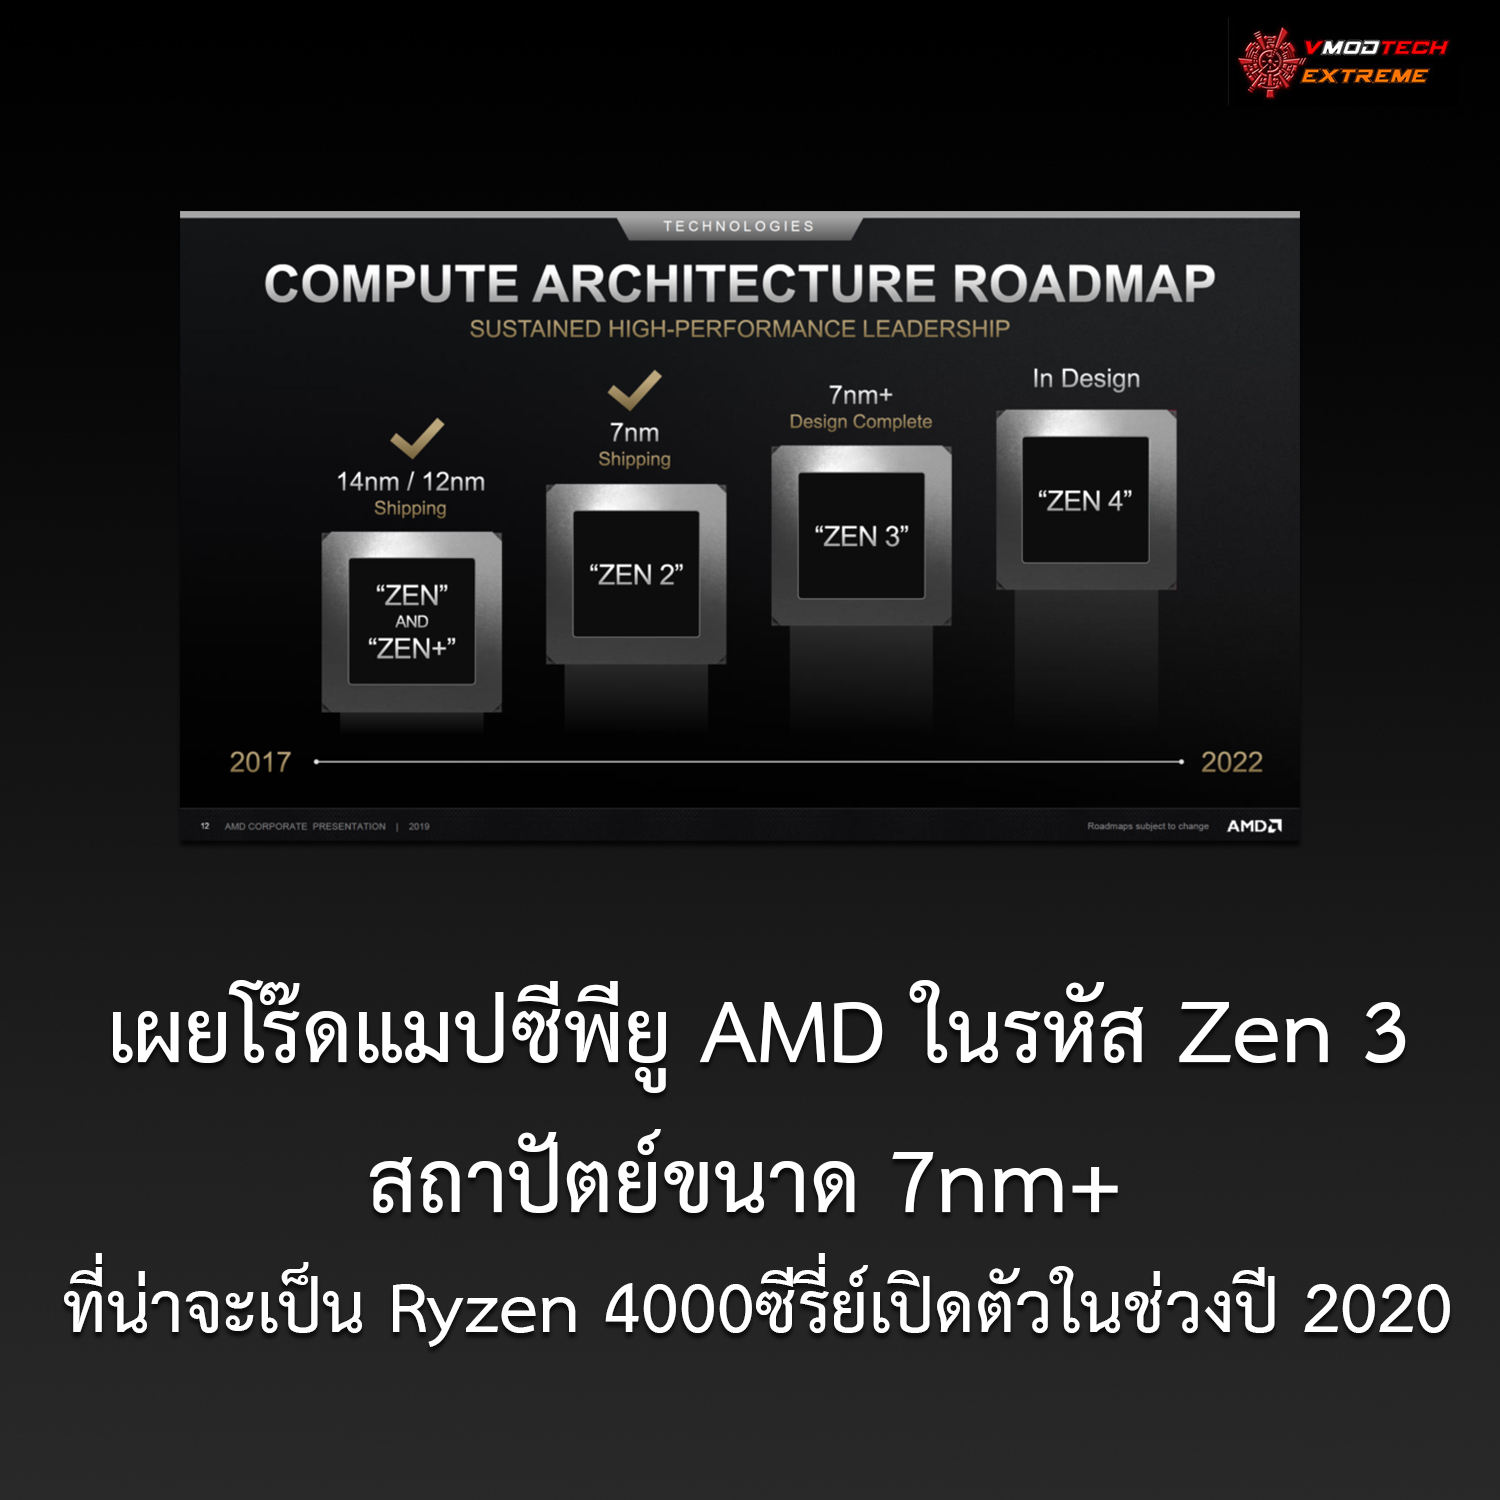 amd news zen3 เผยโร๊ดแมปซีพียู AMD ในรหัส Zen 3 ที่น่าจะเป็น Ryzen 4000ซีรี่ย์เปิดตัวในช่วงปี 2020